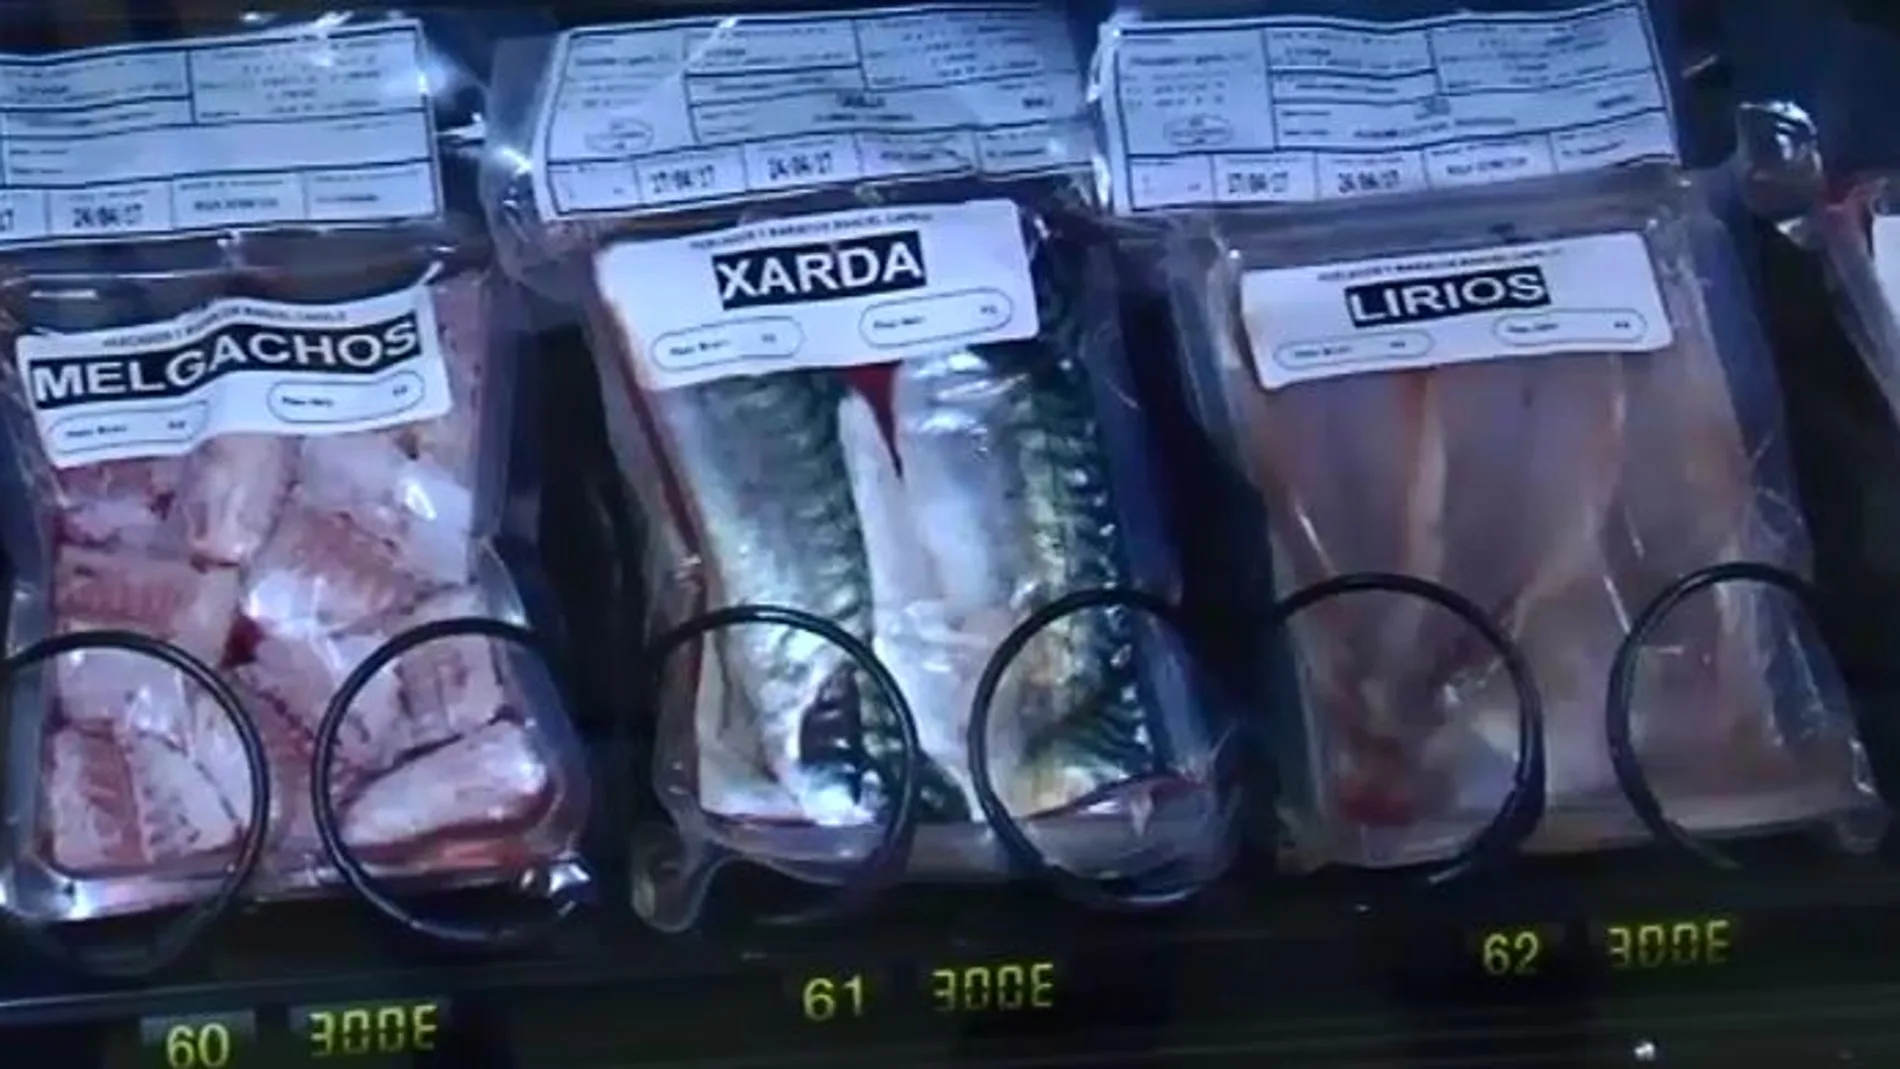 Imagen de los productos comercializados en una máquina expendedora